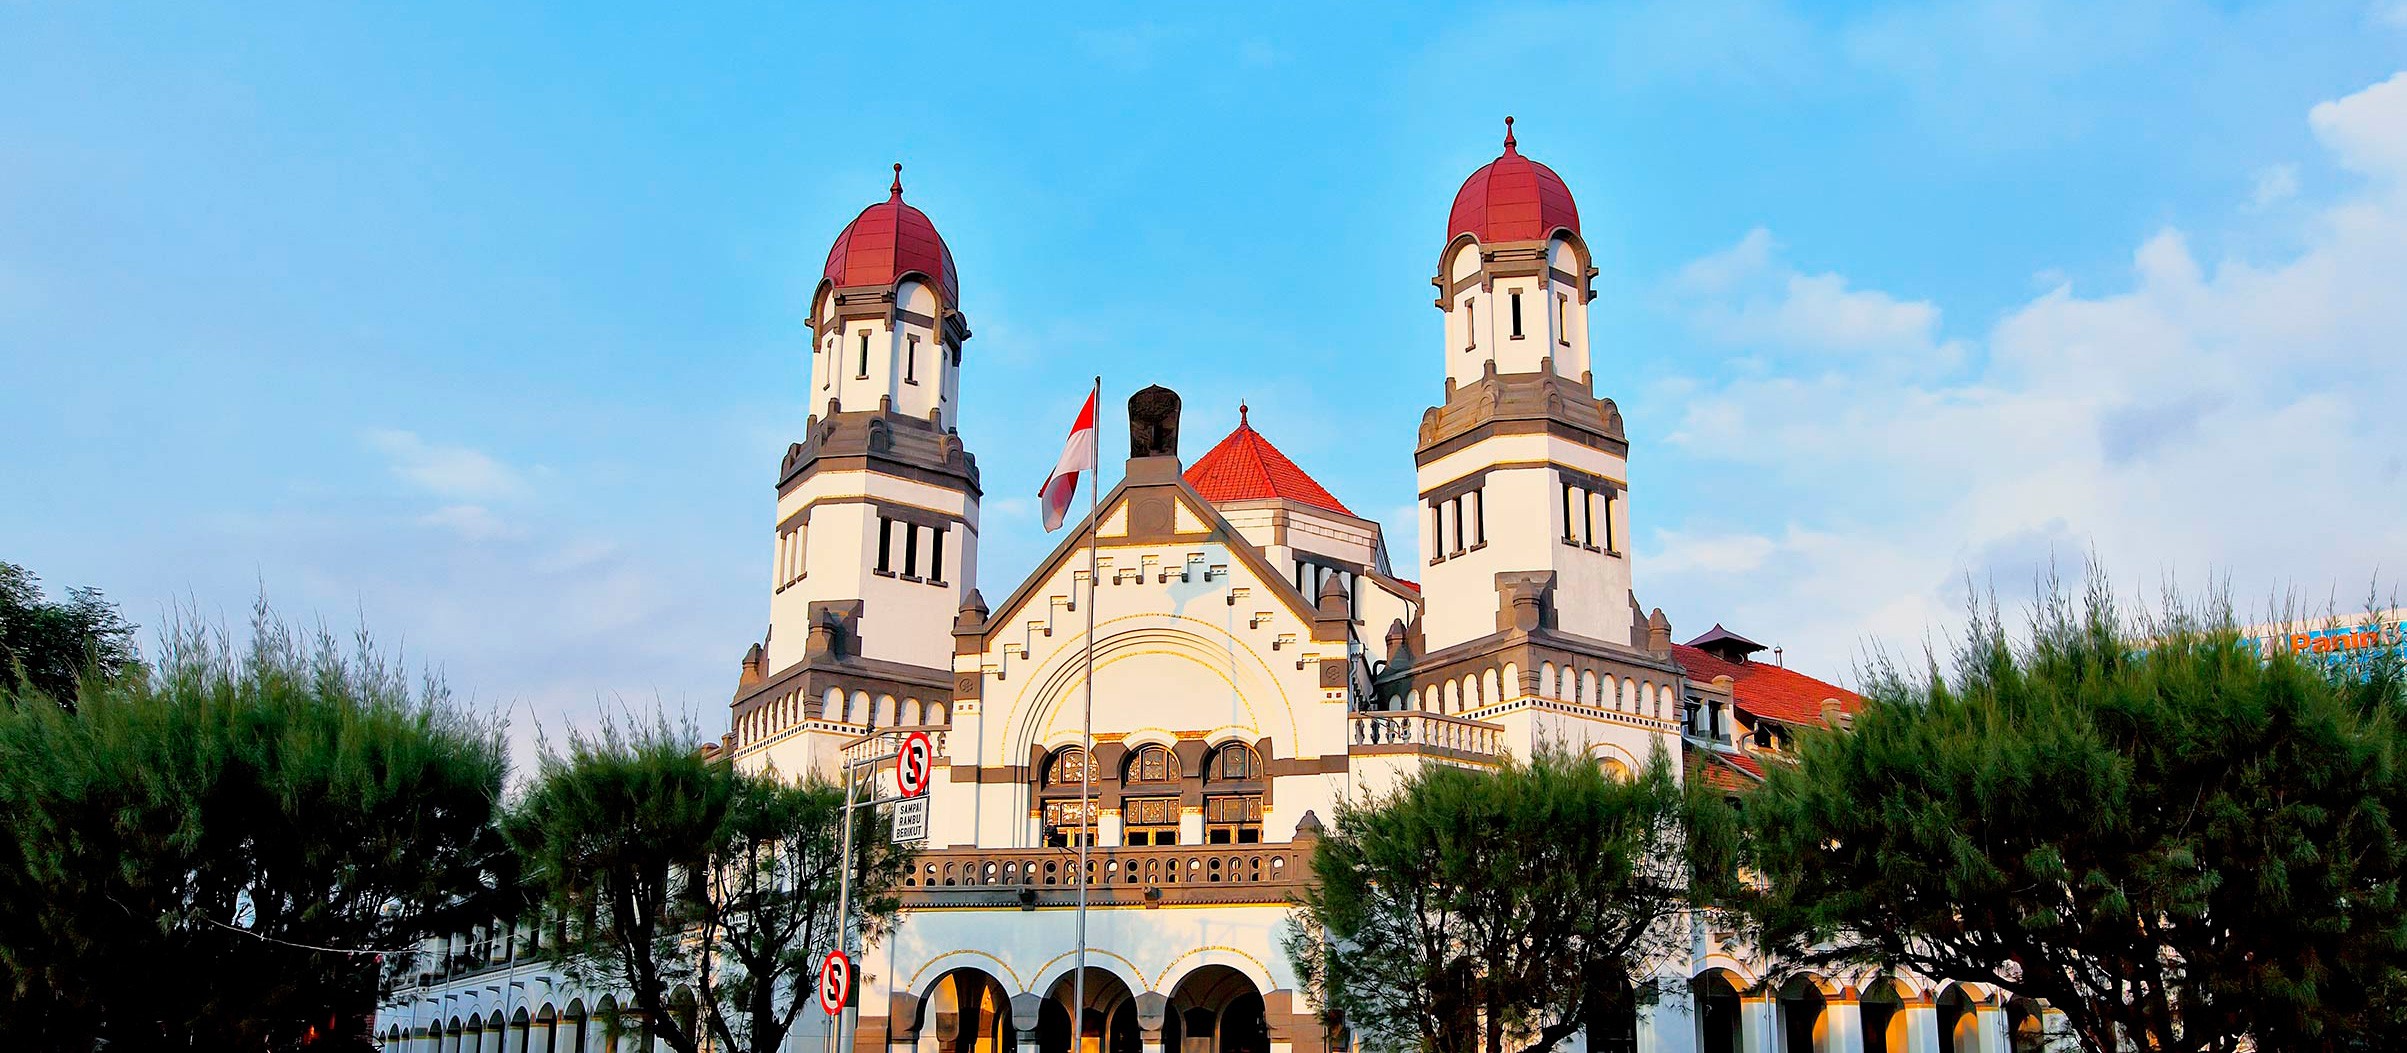 Lawang Sewu: Semarang's Architectural Marvel